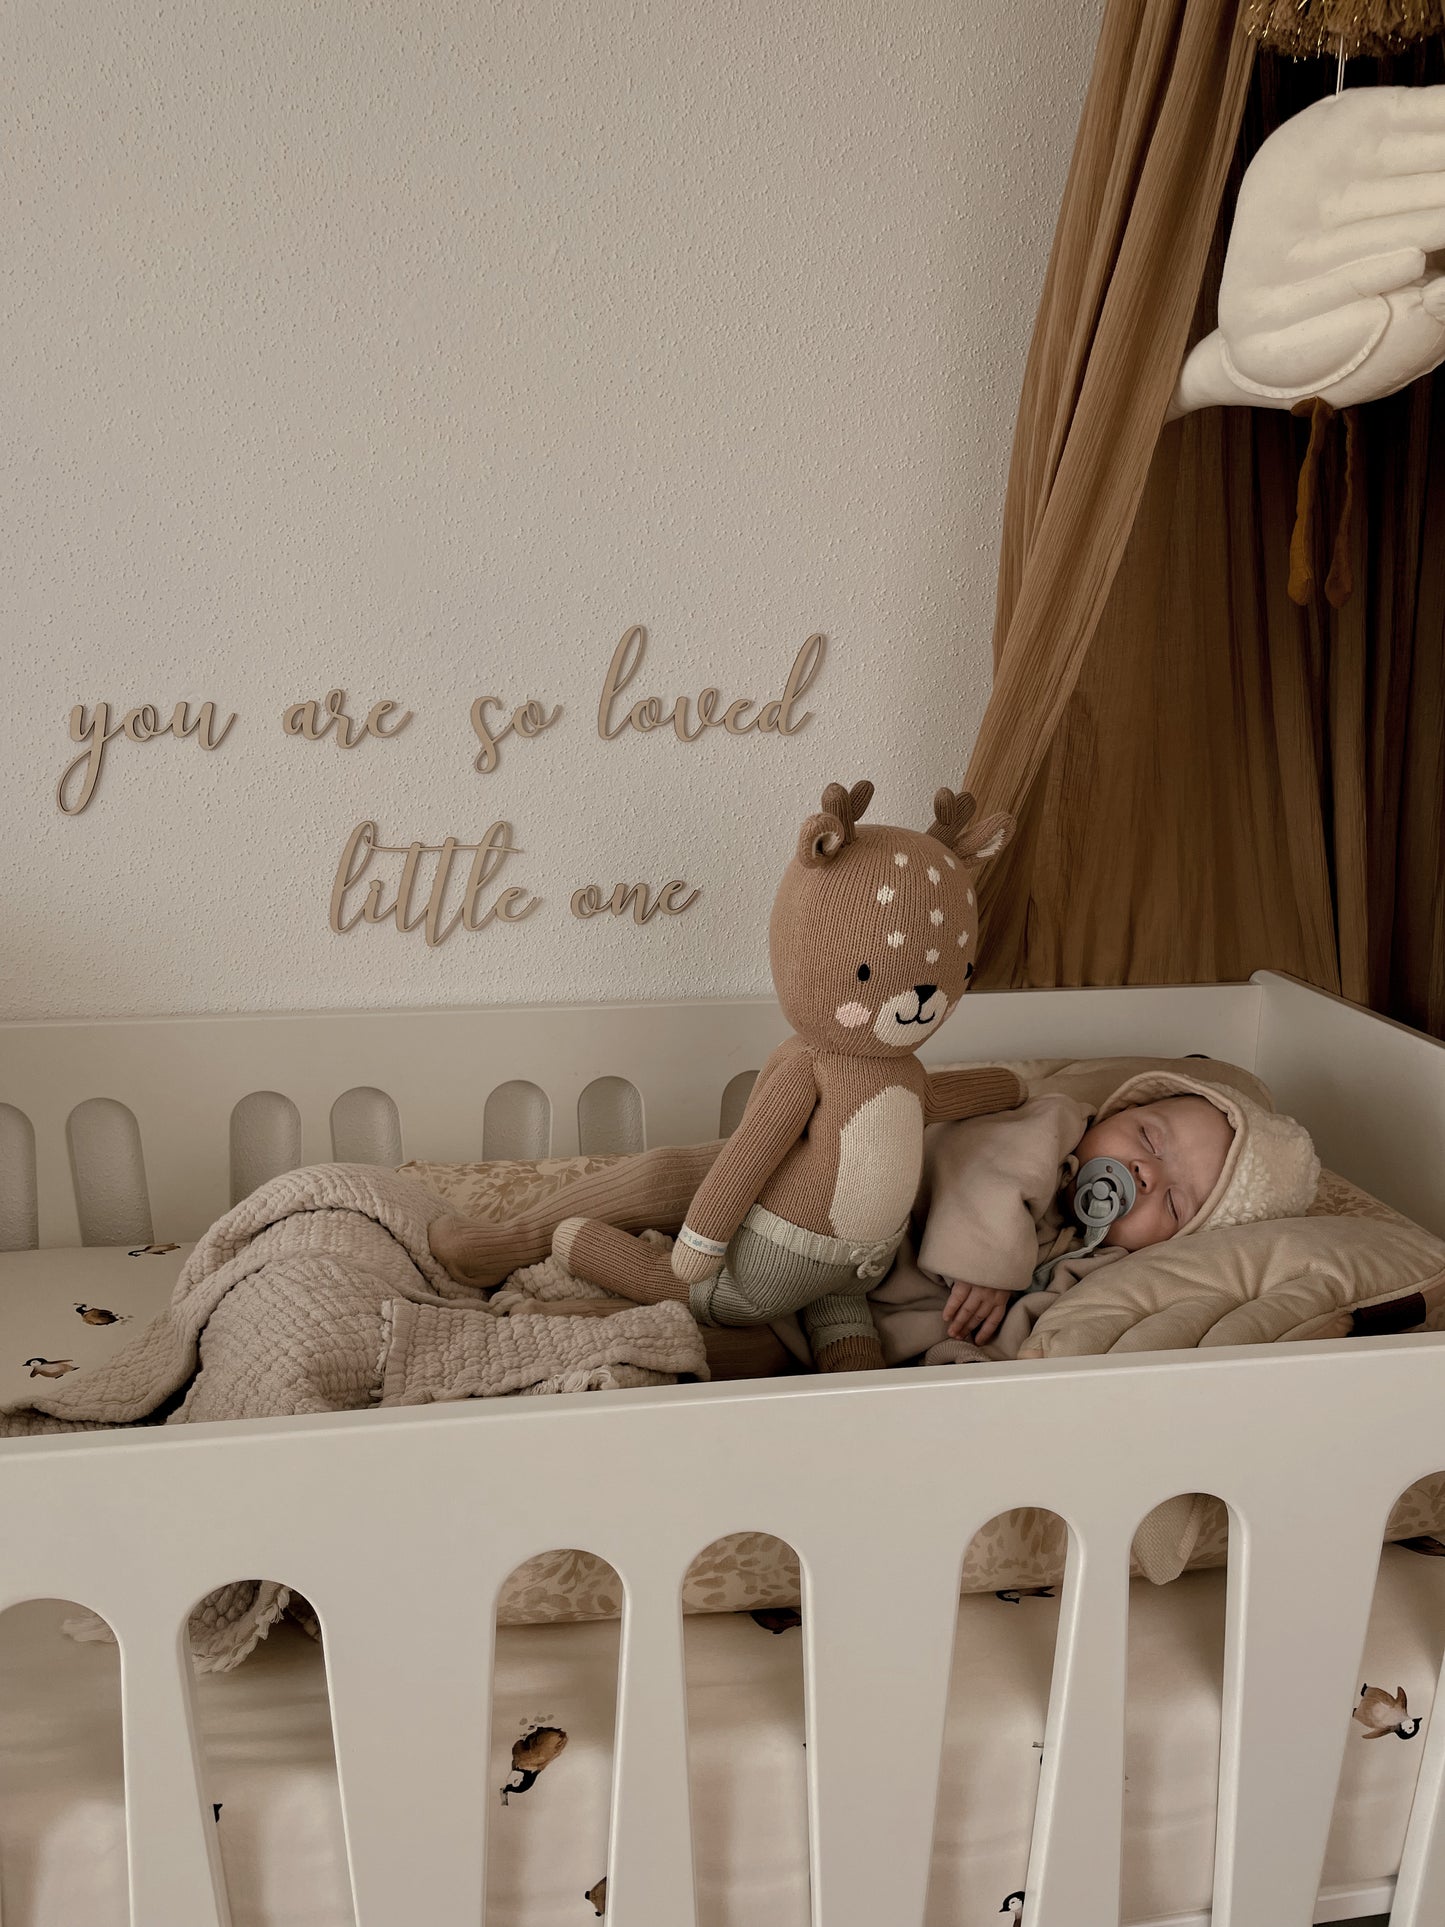 Belle écriture décorative murale "you are so loved little one" + petites étoiles